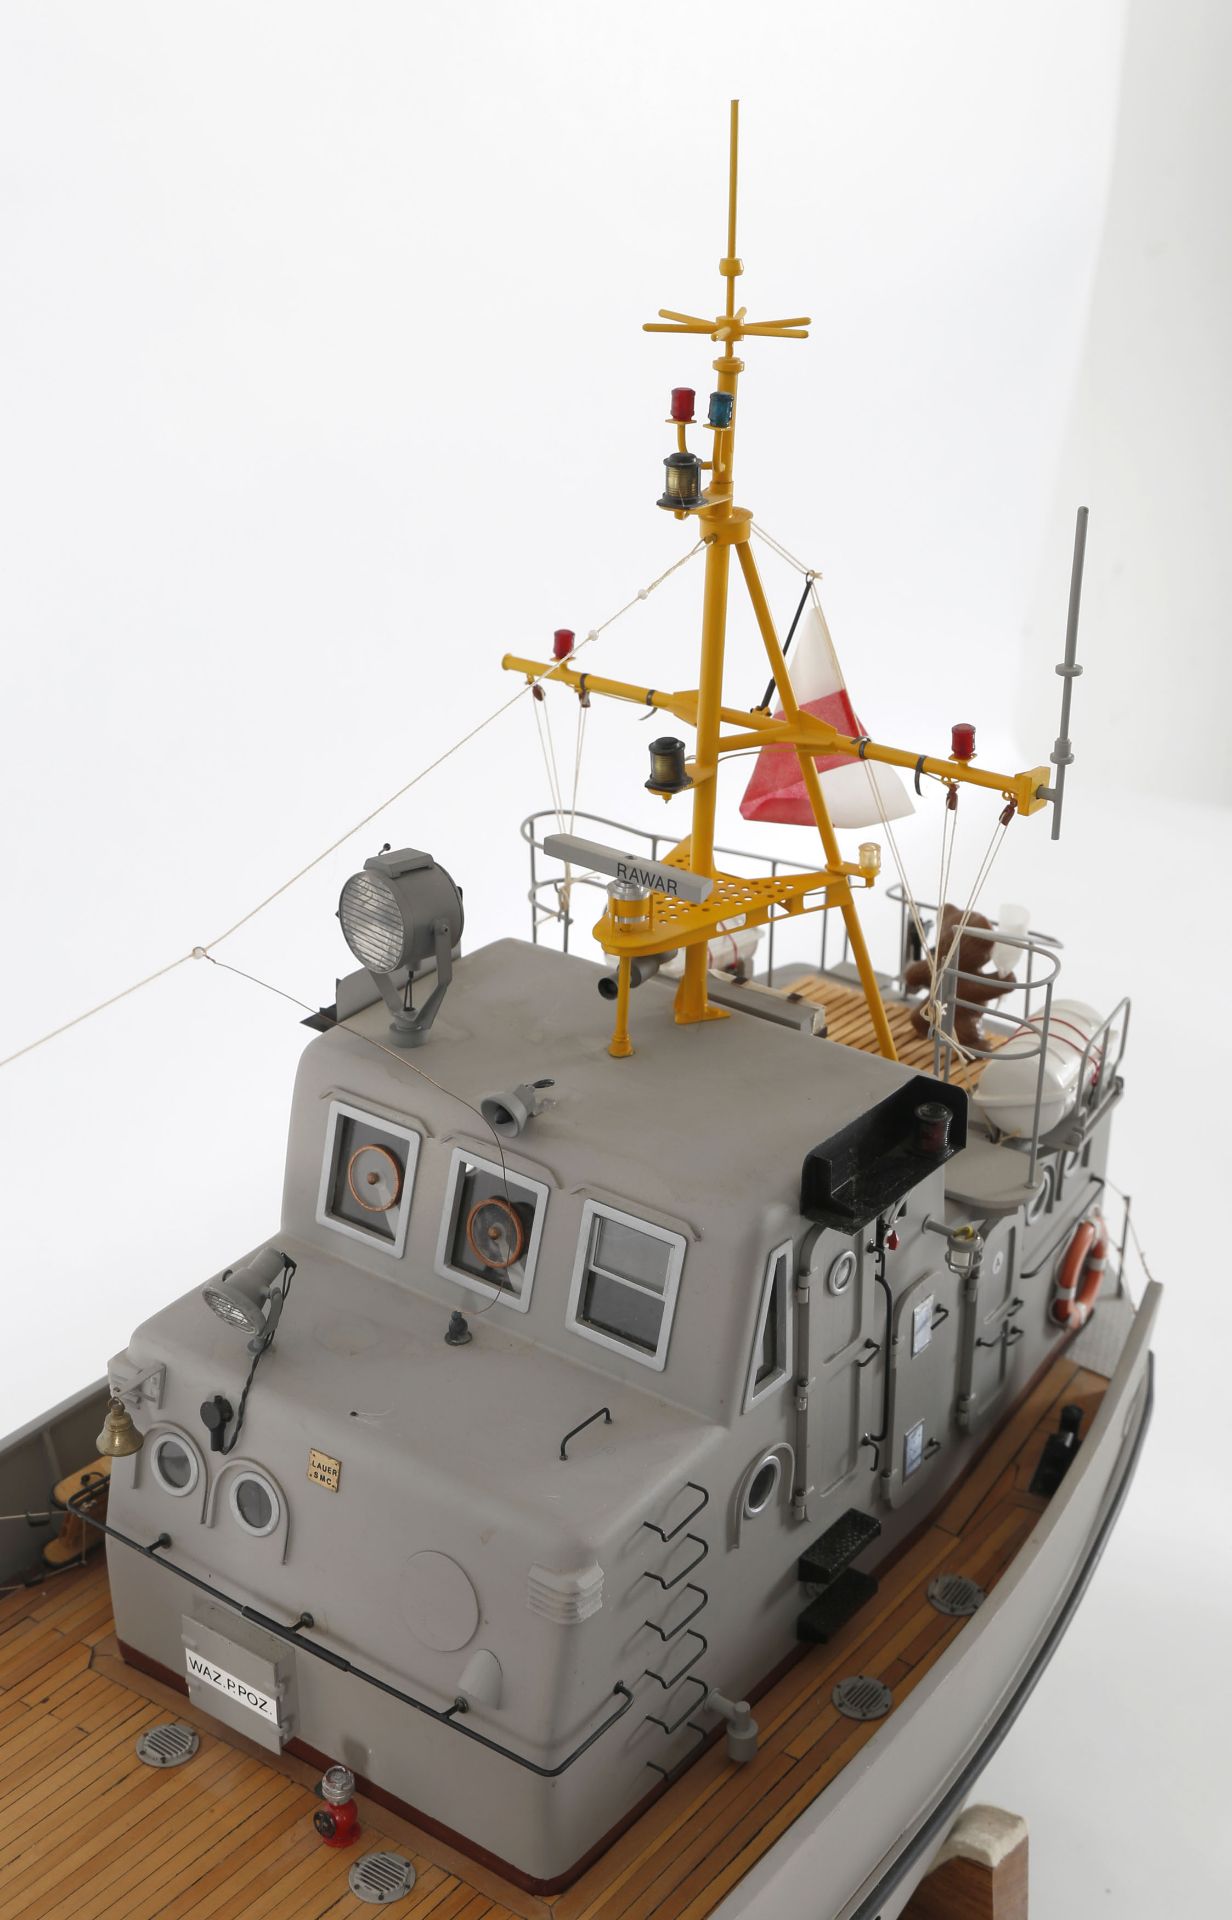 Modell des polnischen Rettungsbootes 'R 33' - Image 5 of 7